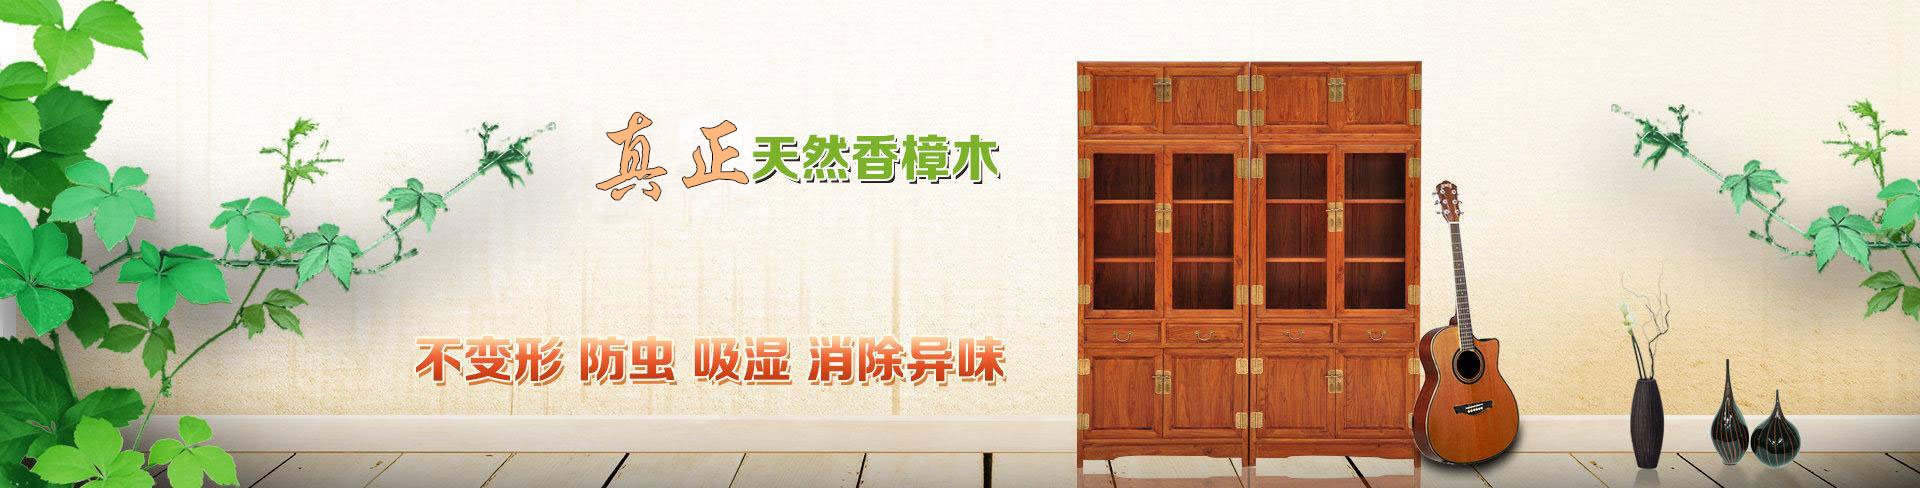 江西樟木古籍文物柜生产公司